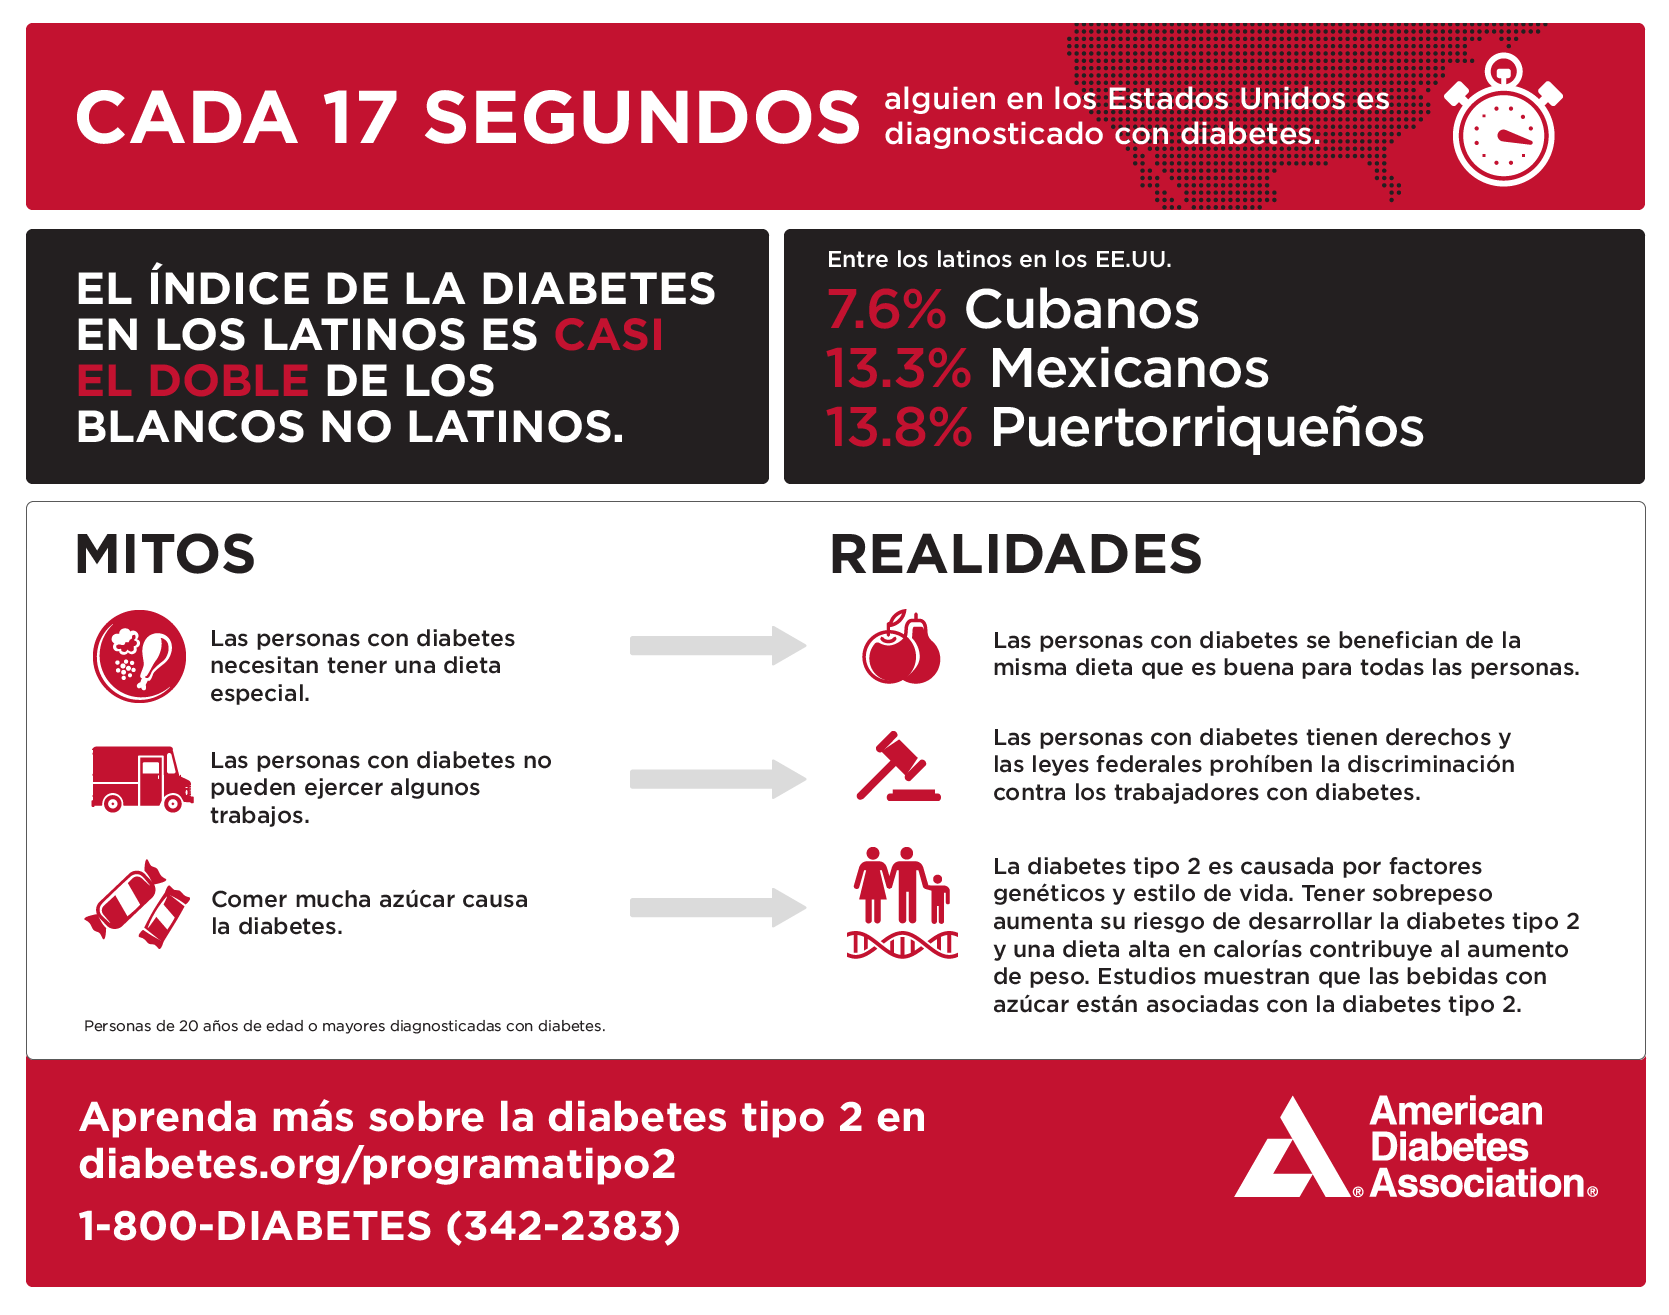 Infográfico de la Asociación Americana de Diabetes: Mitos y realidades sobre la diabetes tipo 2